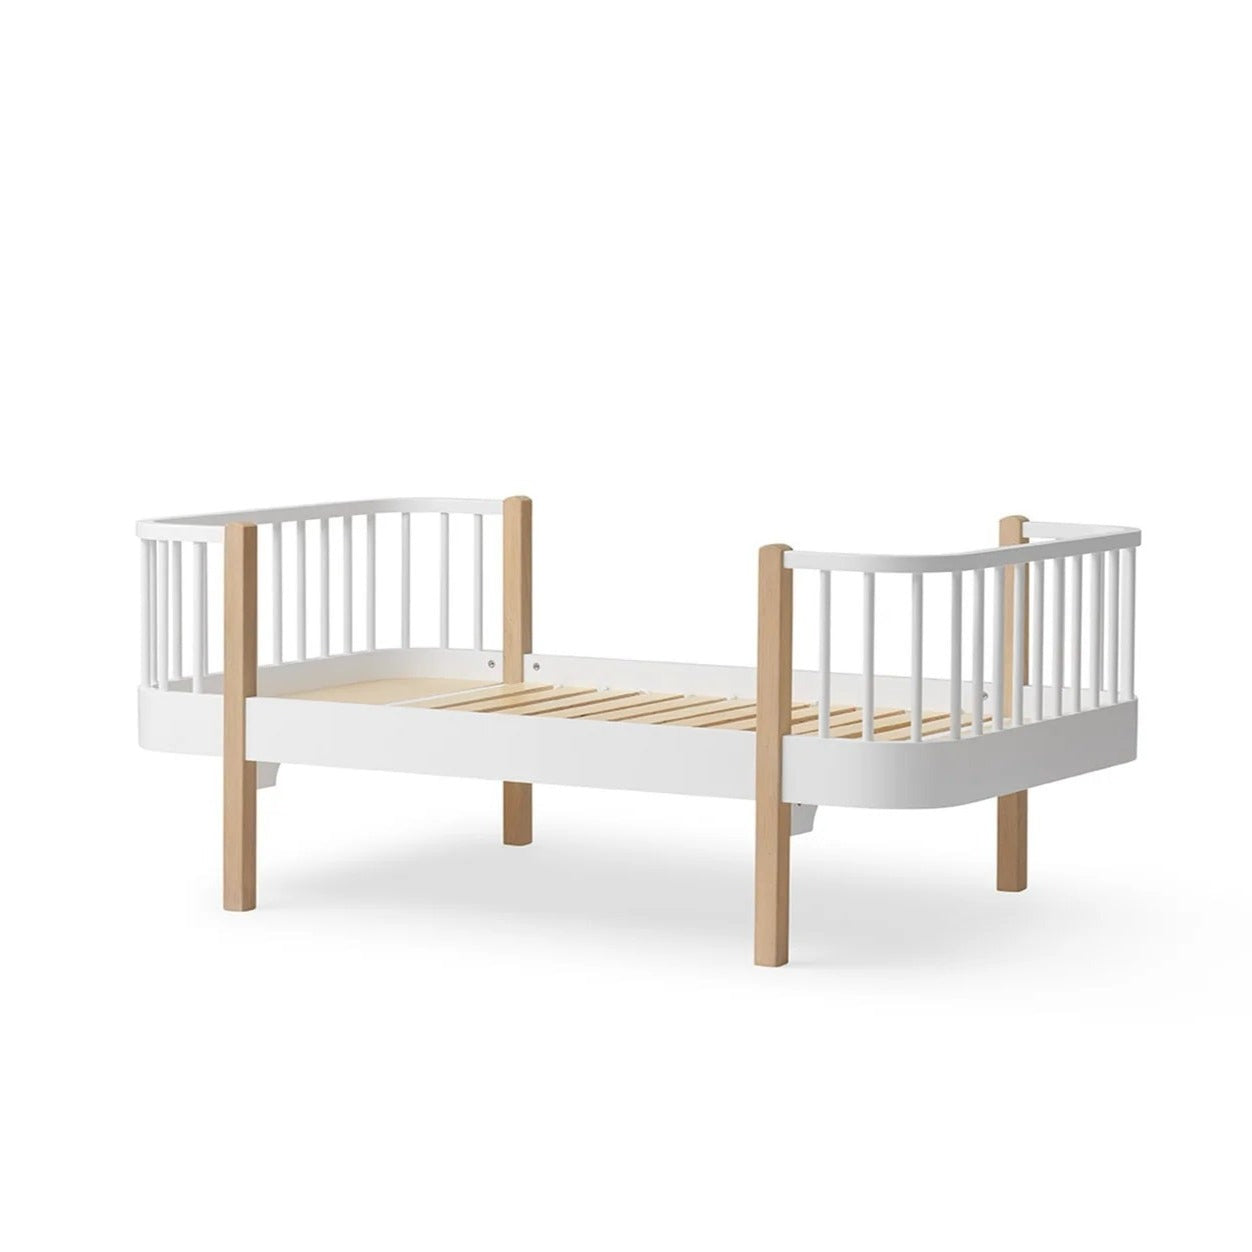 Oliver Furniture Wood Original Junior Bed - White/Oak